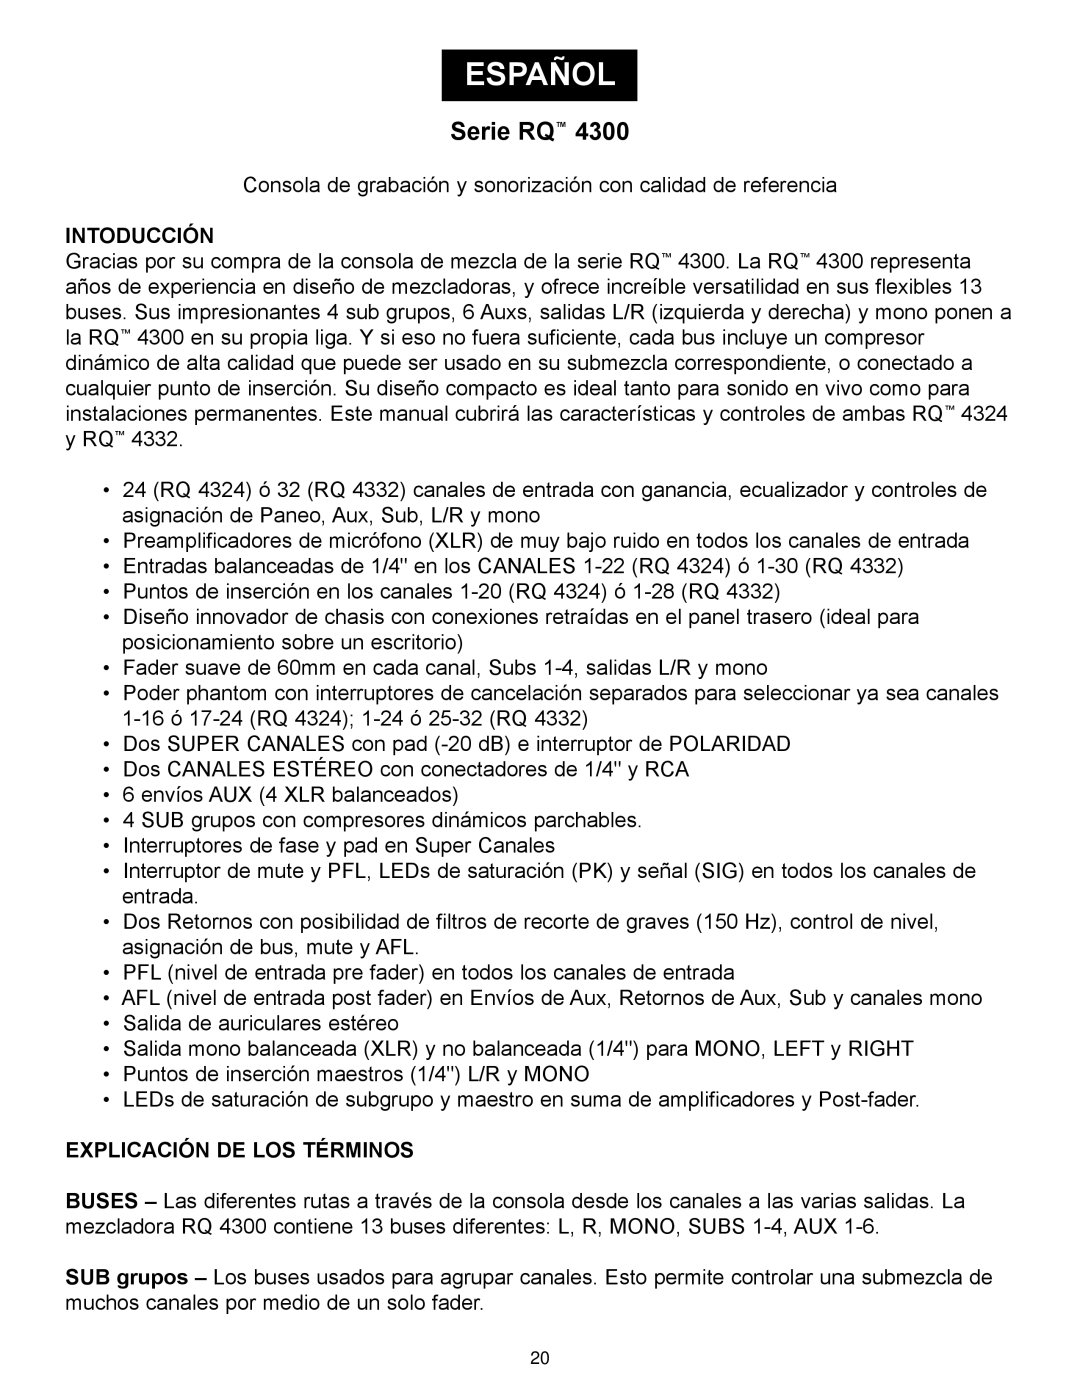 Peavey RQ 4300 Series manual Español, Serie RQ, Intoducción, Explicación De Los Términos 